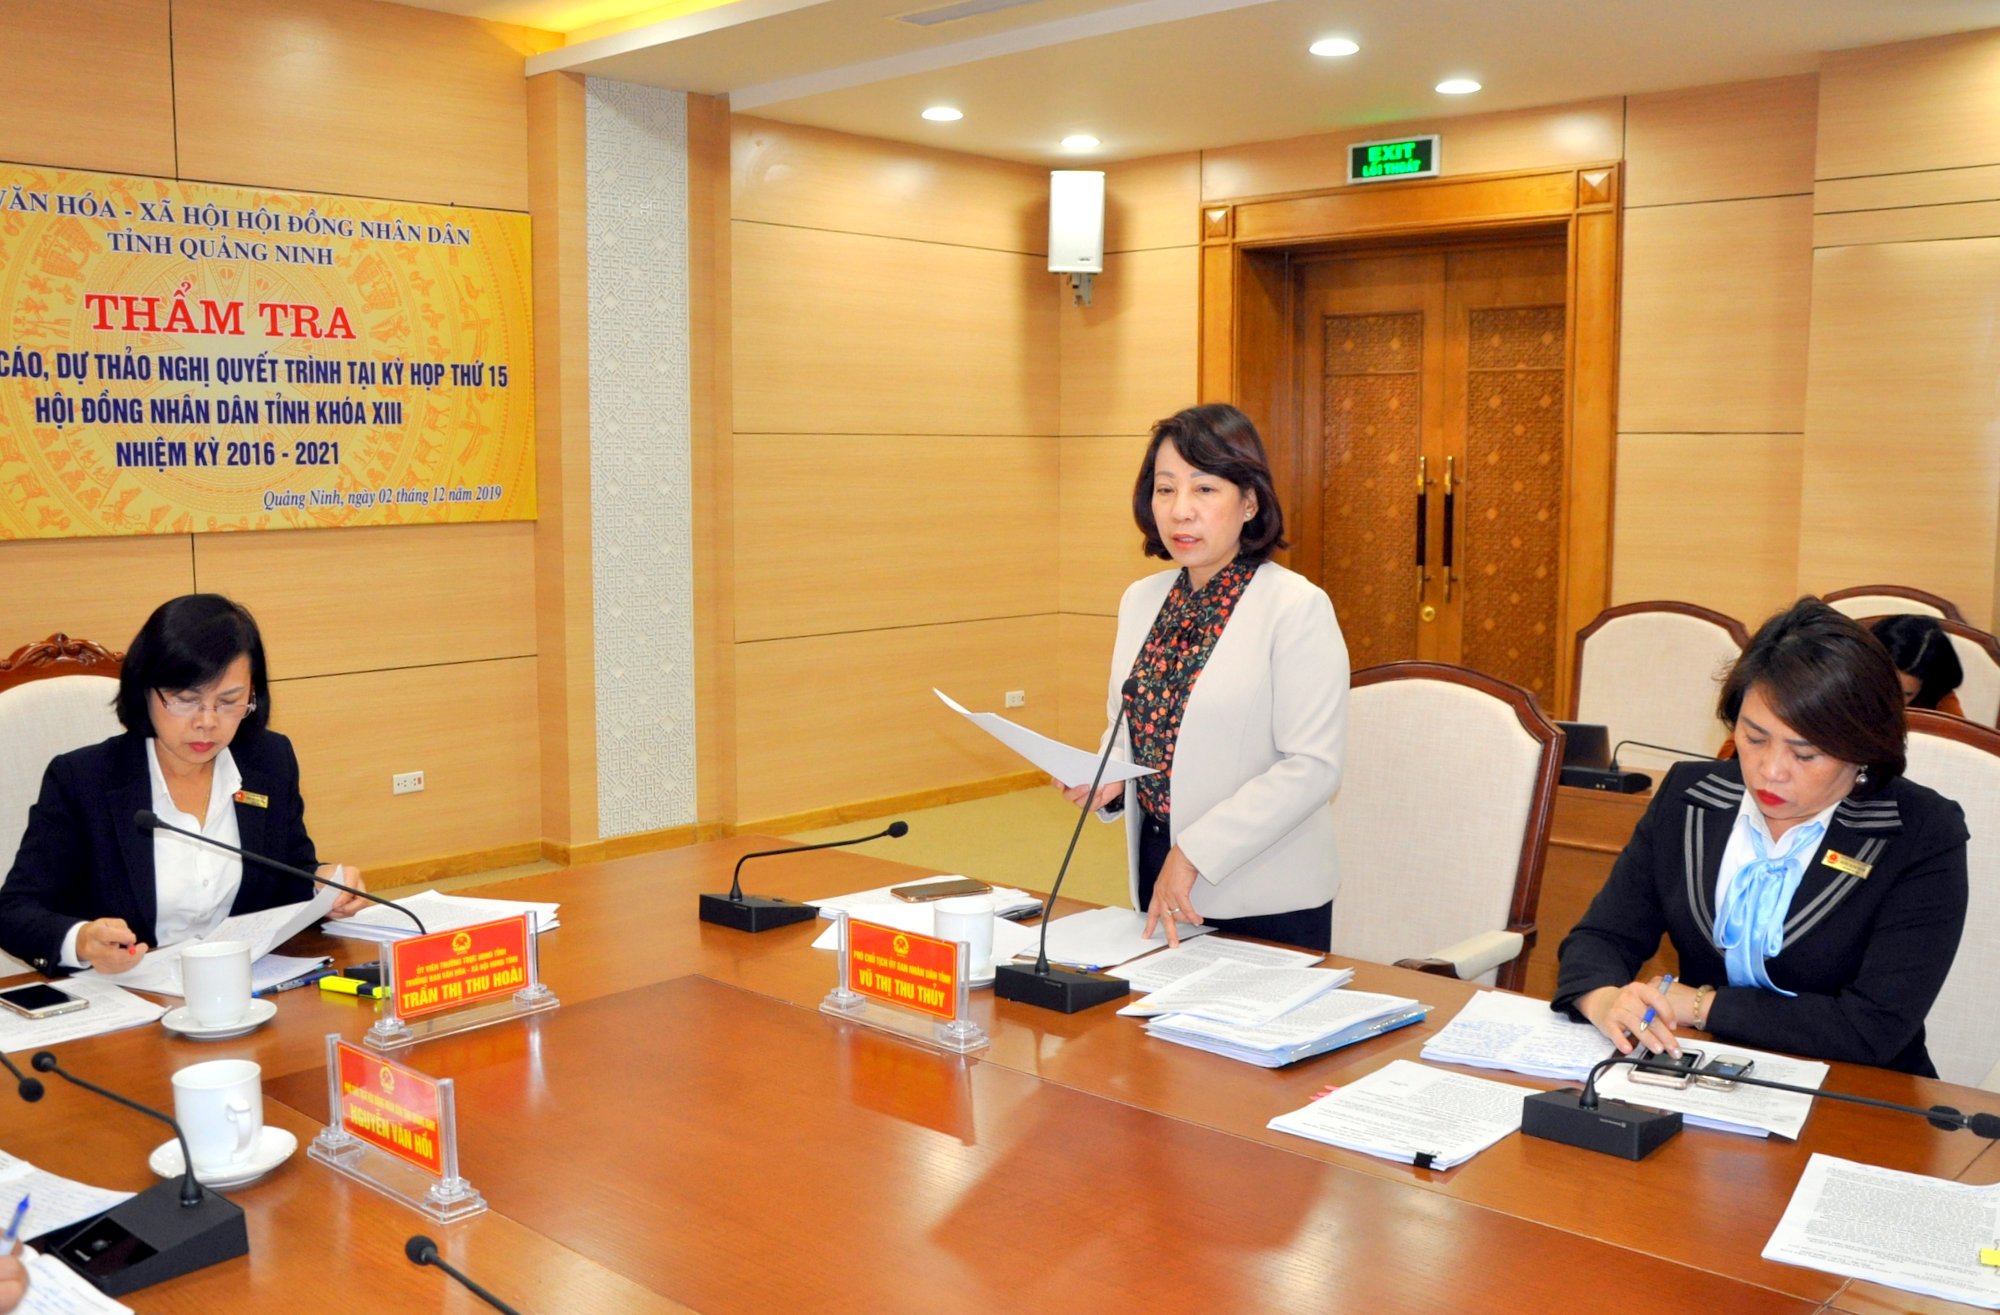 Phó Chủ tịch UBND tỉnh Vũ Thị Thu Thủy tham gia đóng góp ý kiến vào các báo cáo